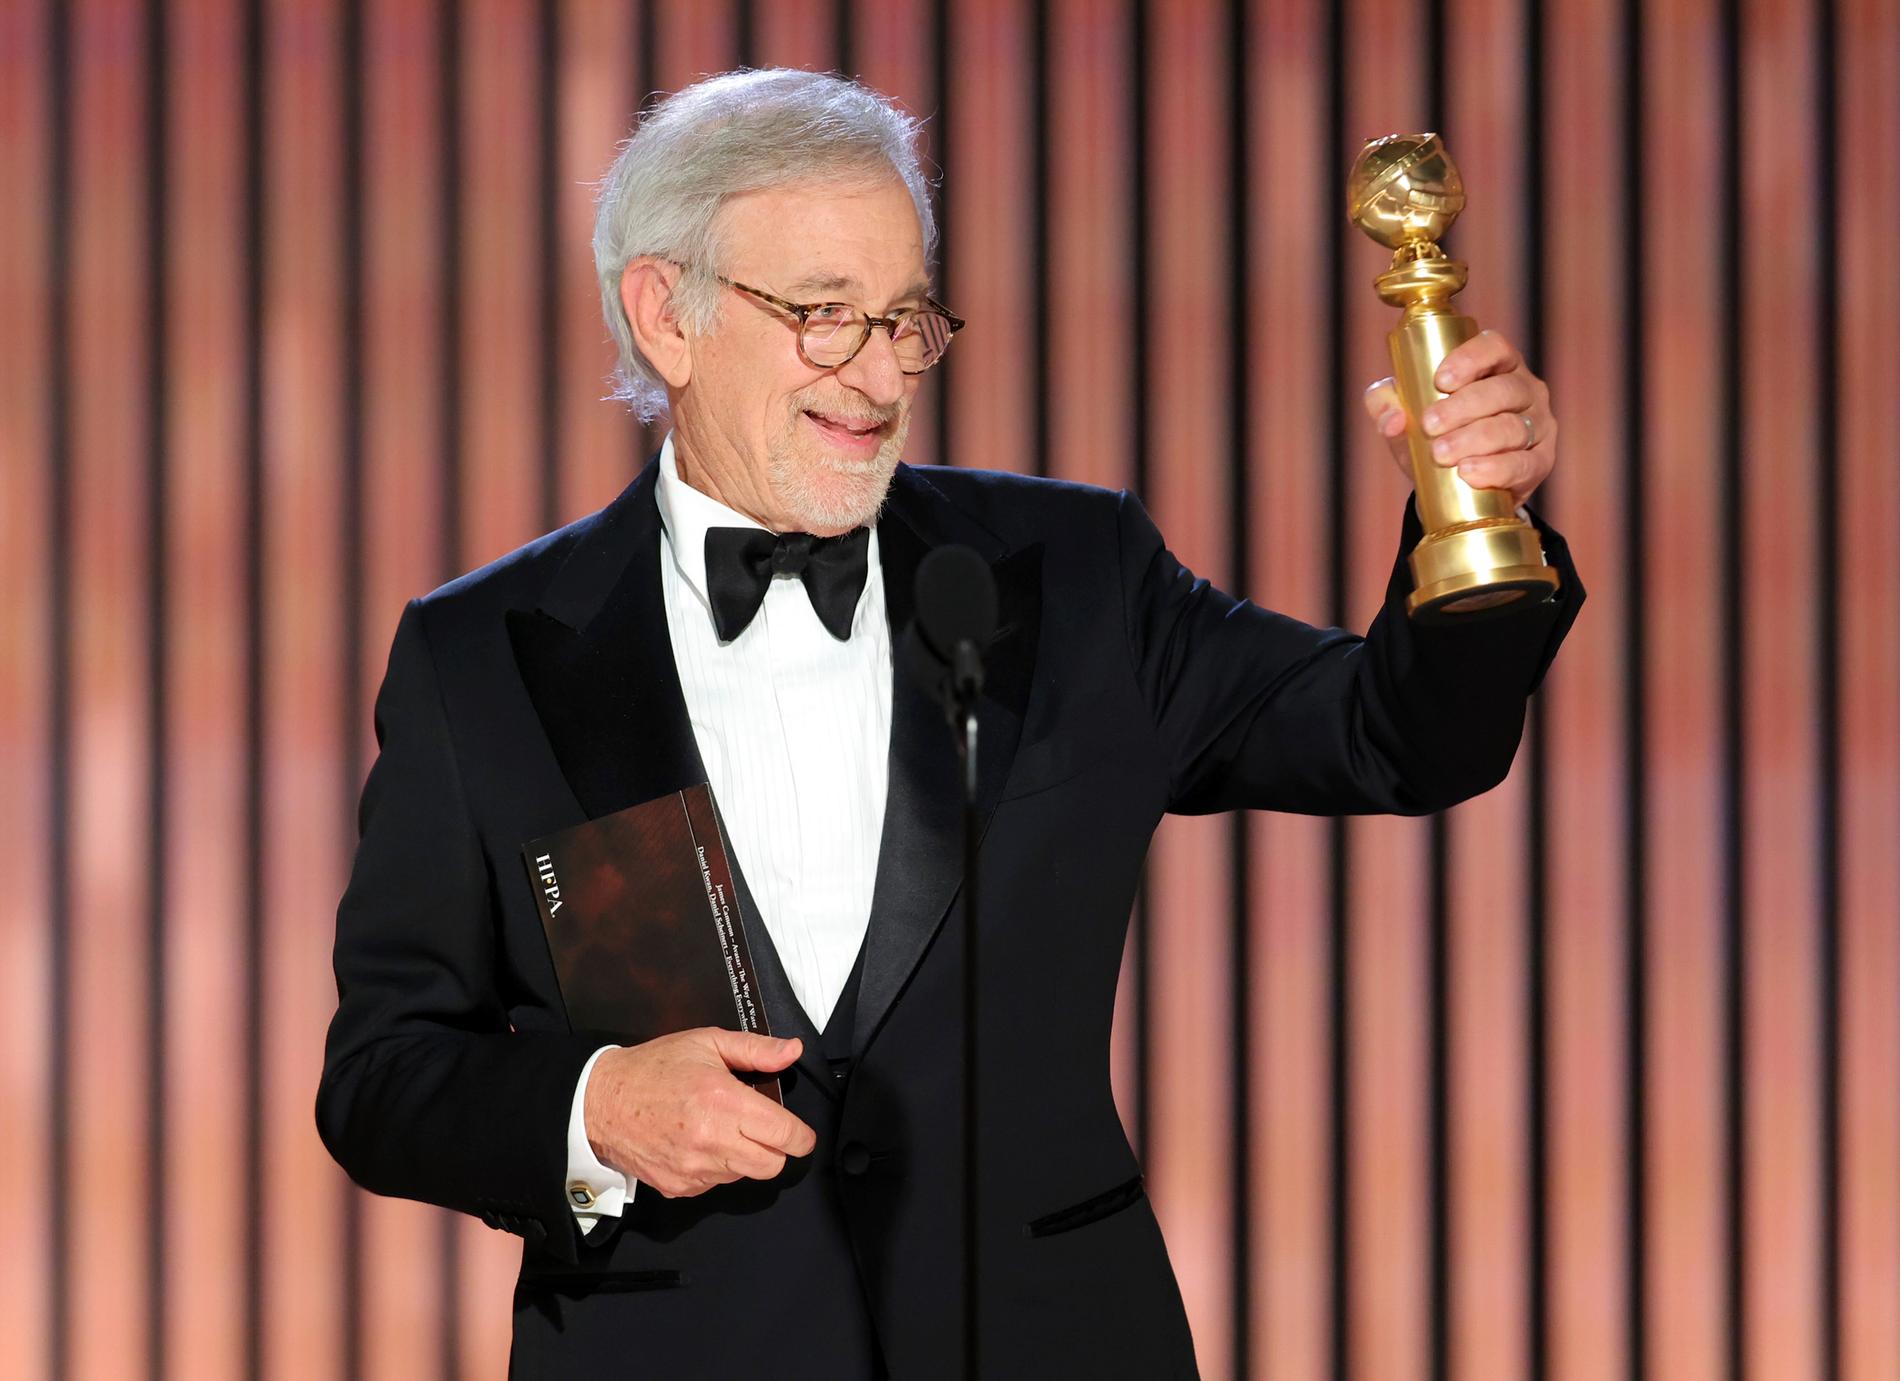 Steven Spielberg vann regipriset för sin film "The Fabelmans" på Golden Globe-galan tidigare i veckan.